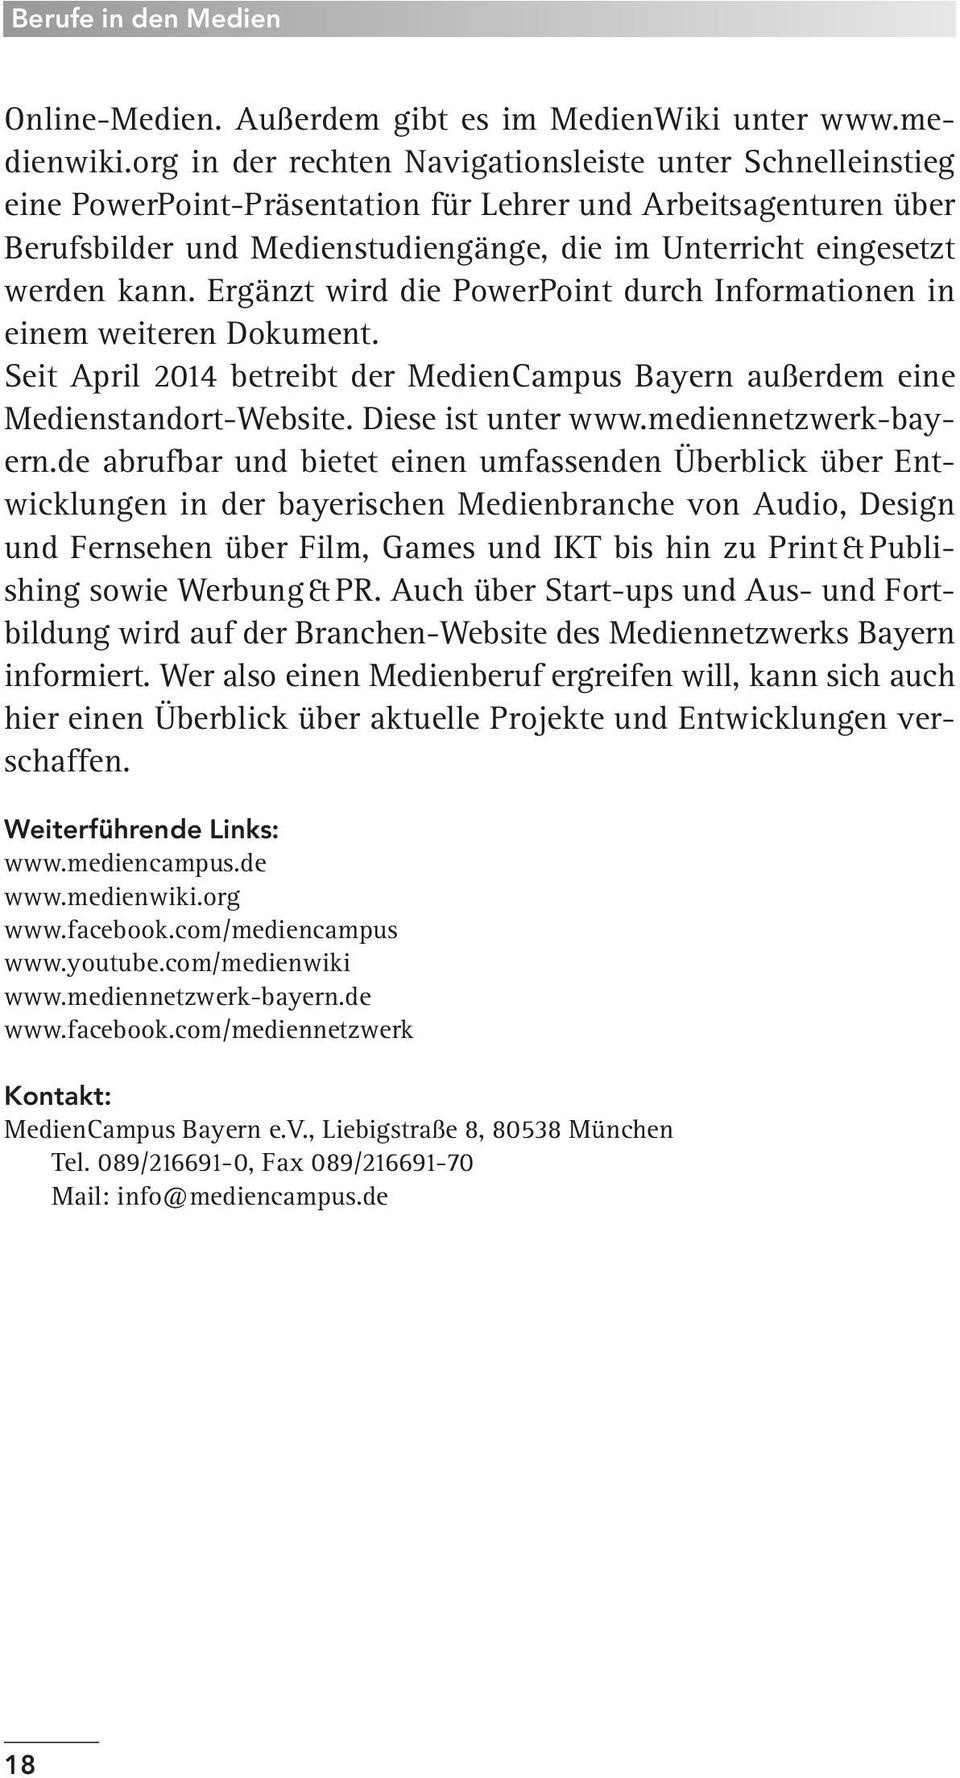 kann. Ergänzt wird die PowerPoint durch Informationen in einem weiteren Dokument. Seit April 2014 betreibt der MedienCampus Bayern außerdem eine Medienstandort-Website. Diese ist unter www.